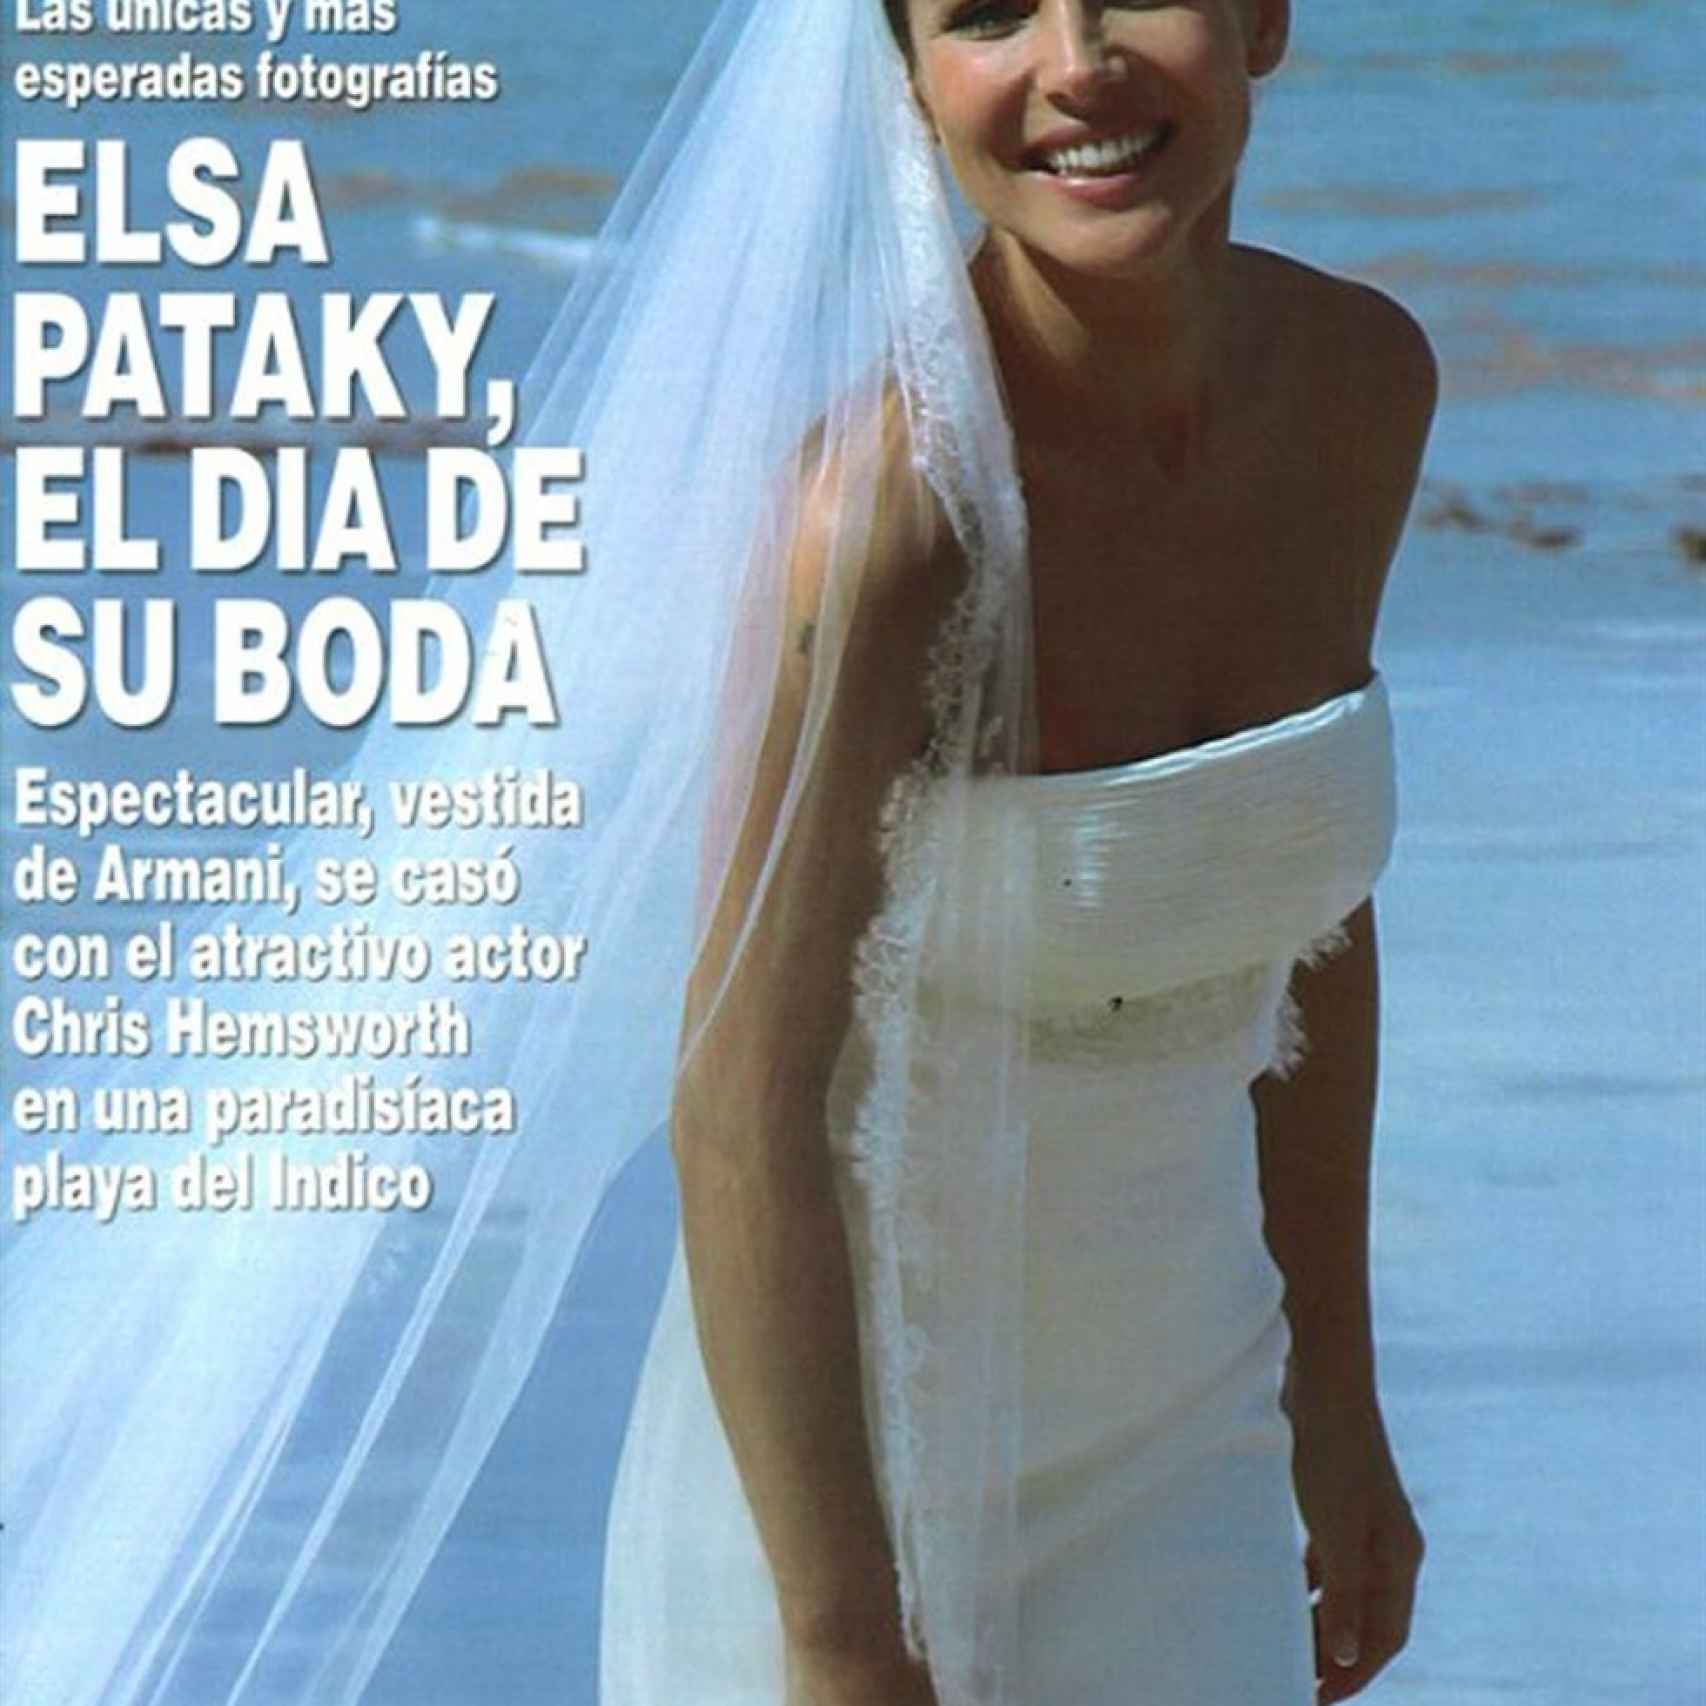 Portada de la revista ¡HOLA! de la boda de Elsa Pataky